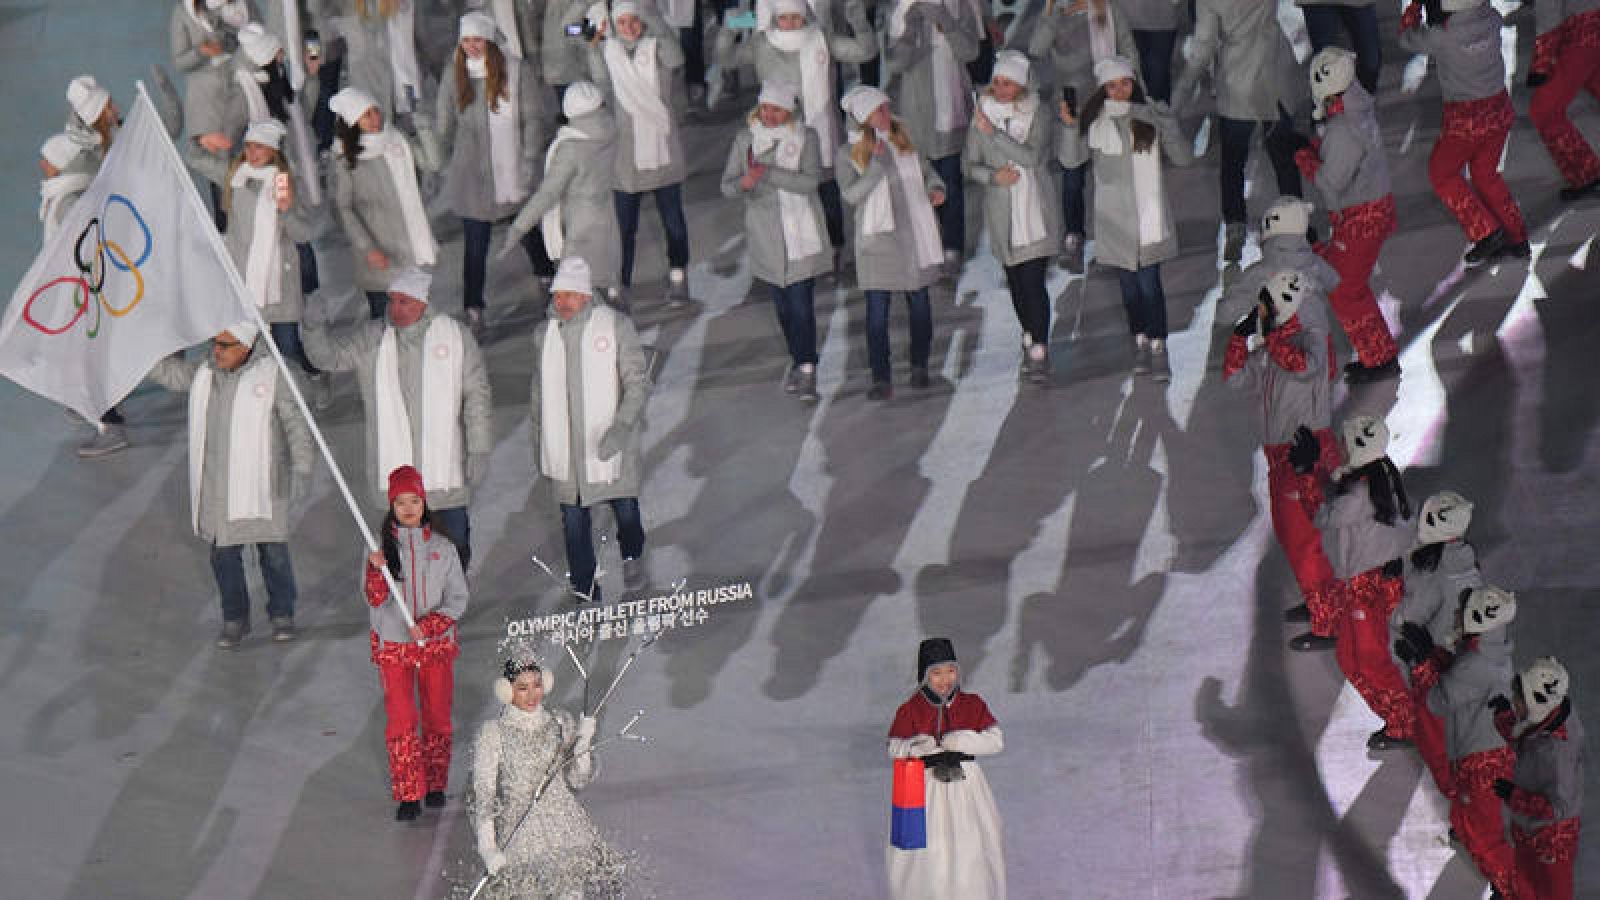 La delegación rusa desfilando durante la ceremonia de apertura de Pyeongchang 2018.